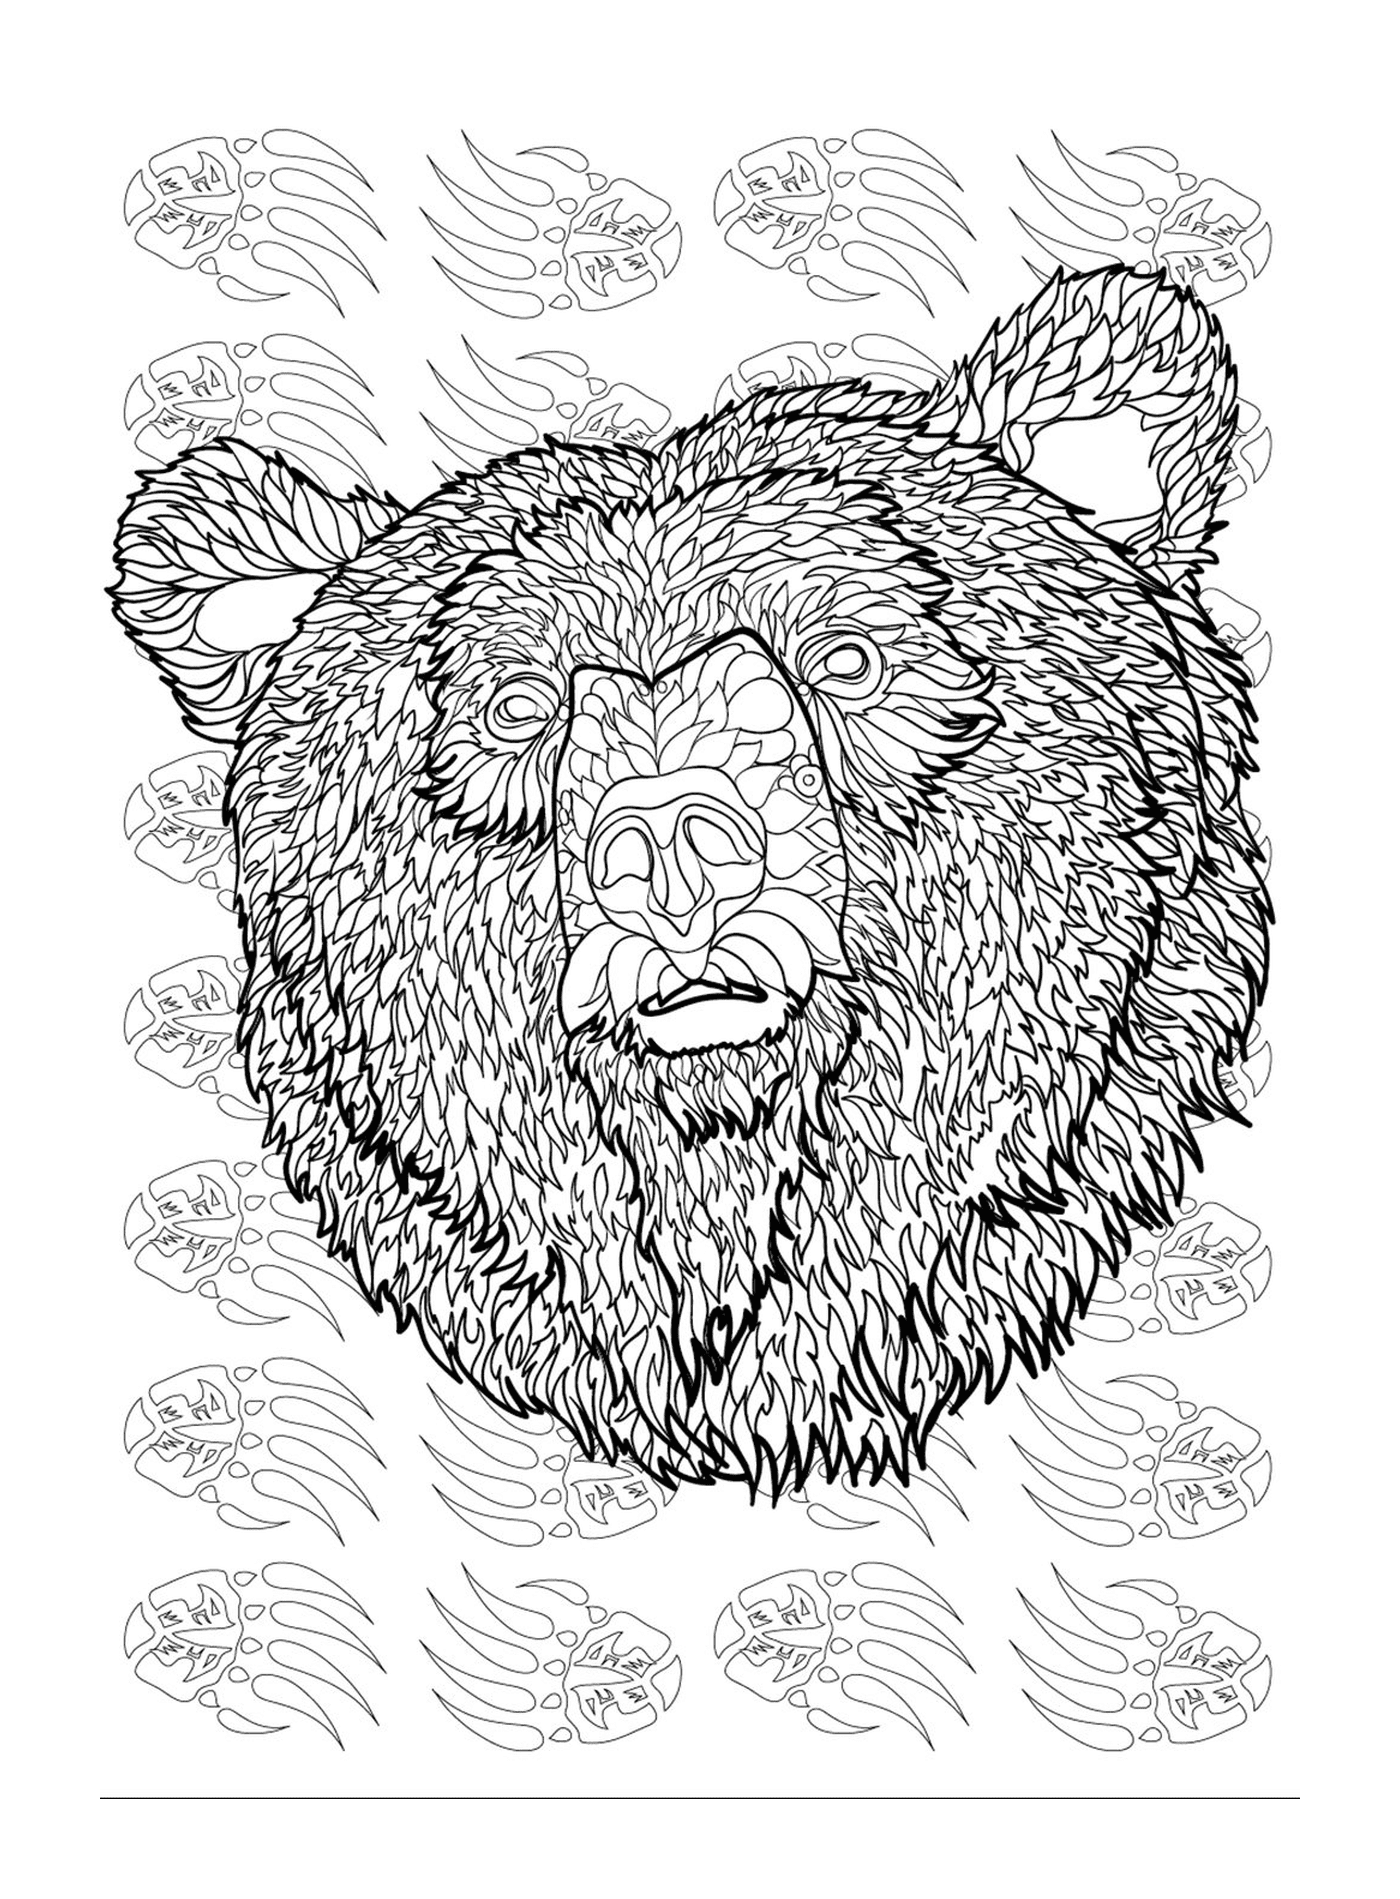   La tête d'un ours 